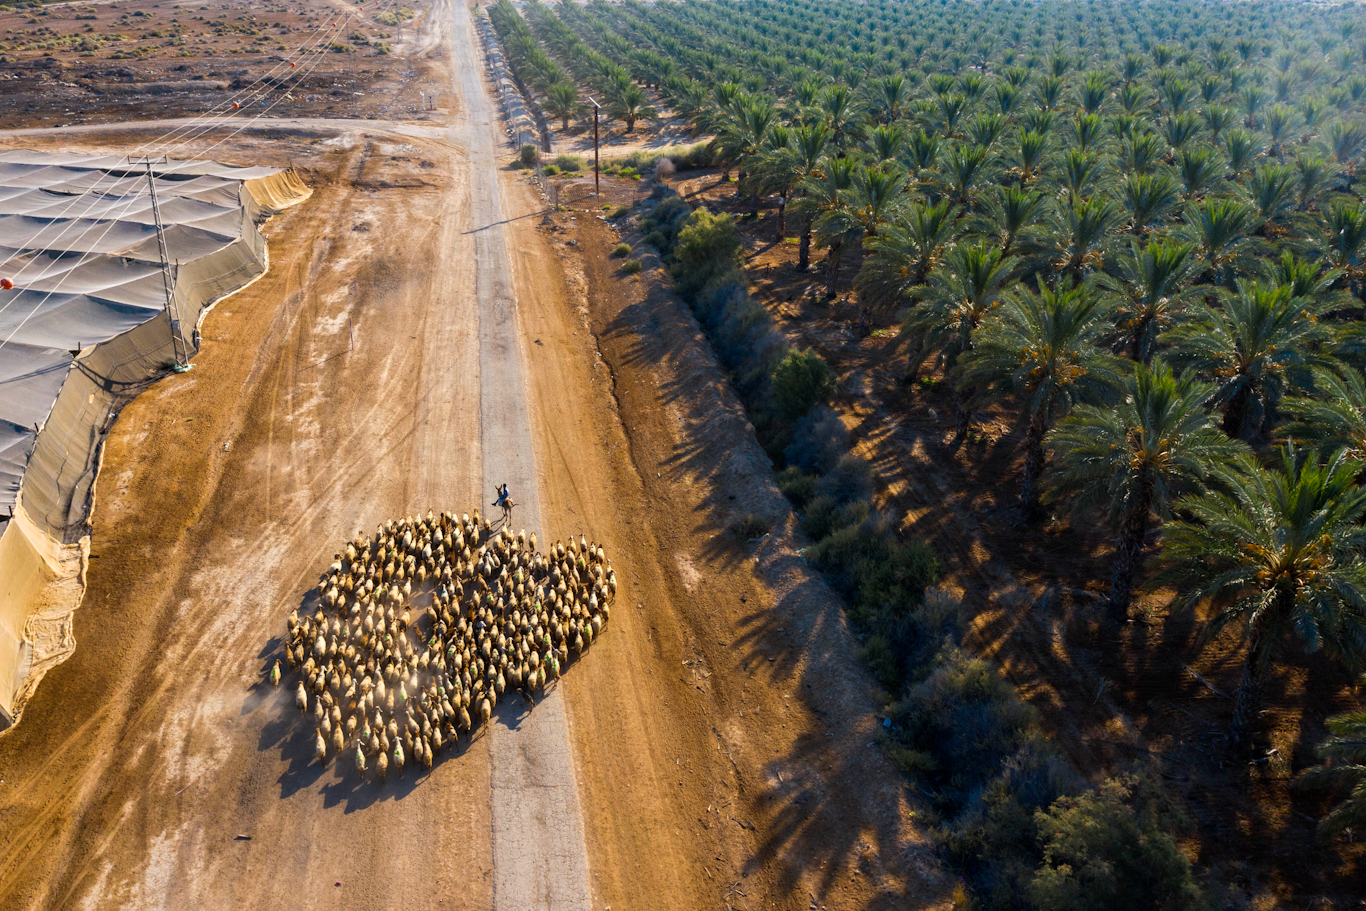 A Palestinian shepherd herds his flock in the Jordan Valley, June 30, 2020. Oded Balilty | AP